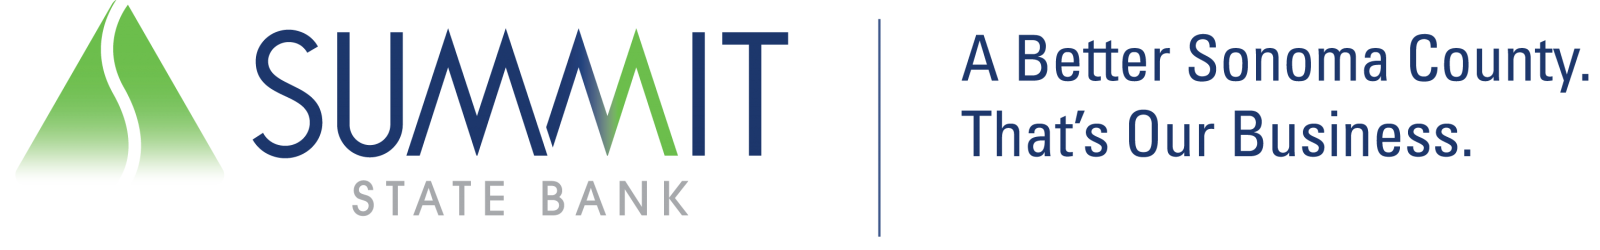 summit state bank logo